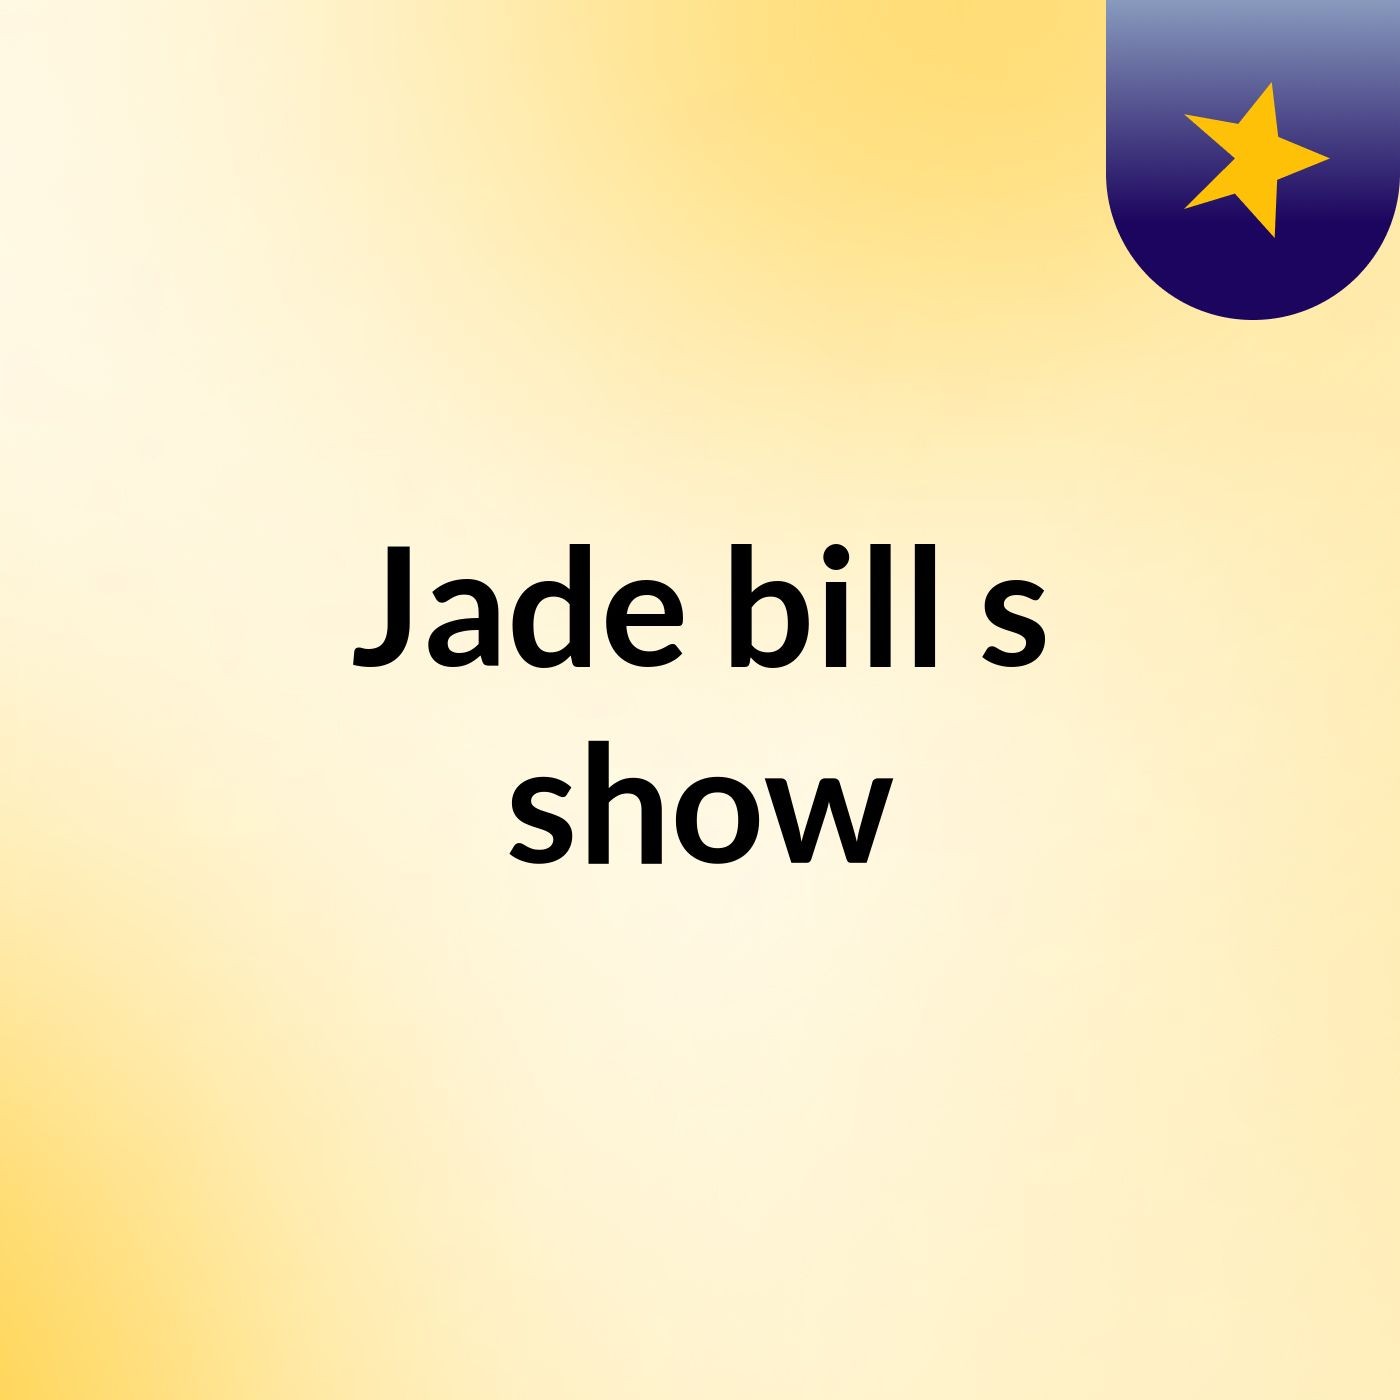 Episode 2 - Jade bill's show